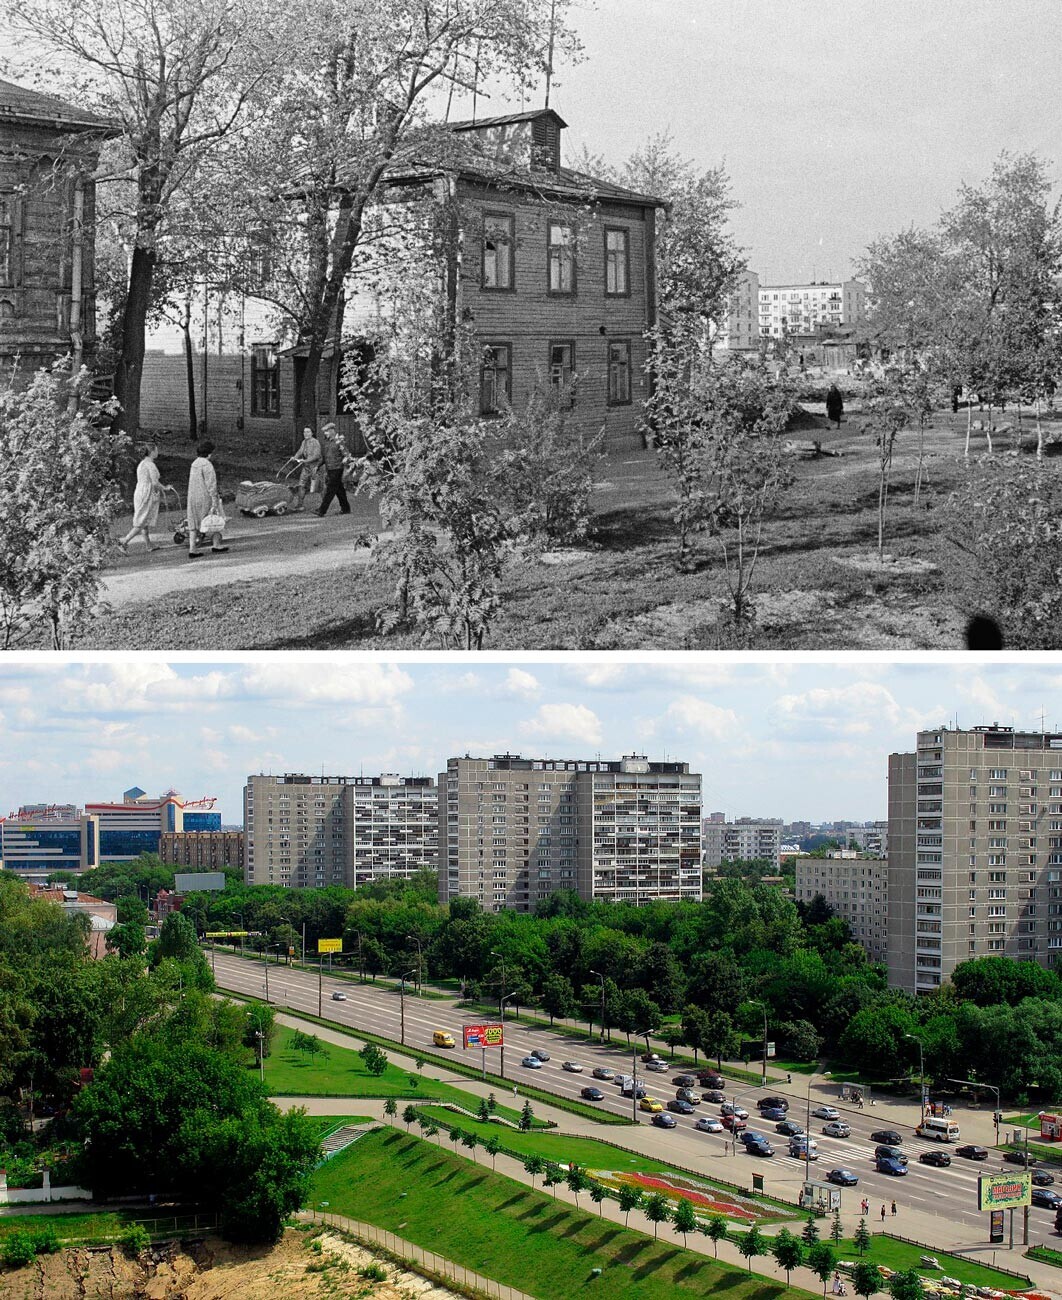 Стари куќи во Черкизово 1964 година и Черкизово денес

